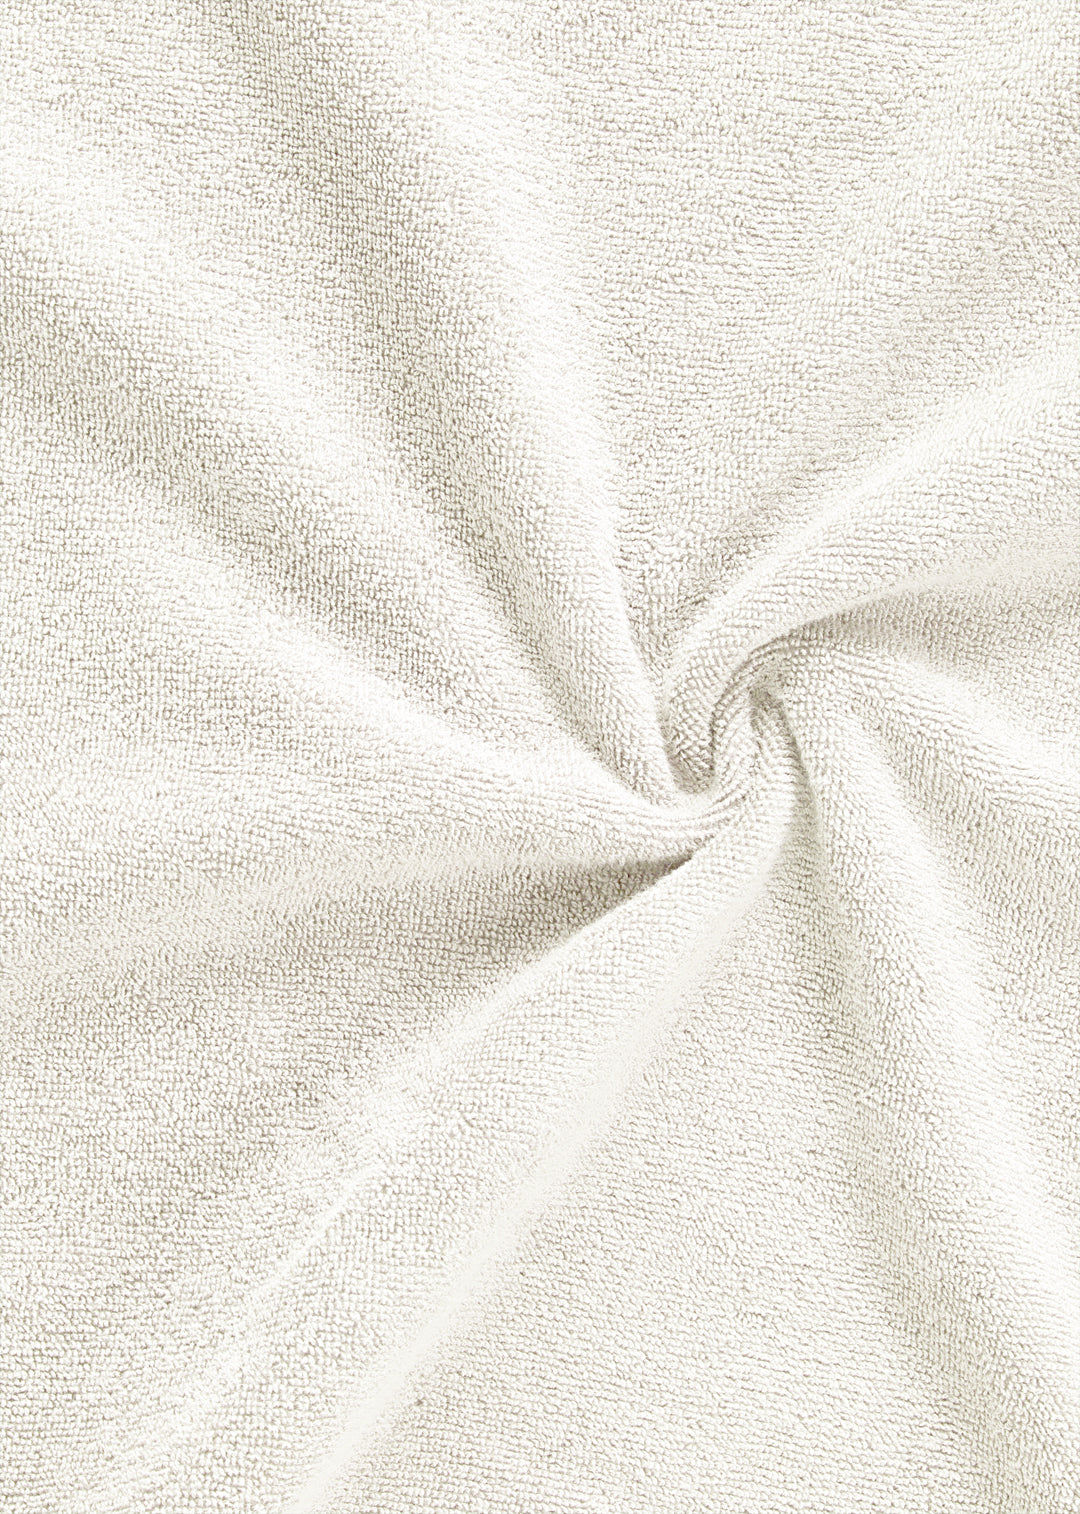 Handtuch Baumwolle Weiß 100 x 150 cm